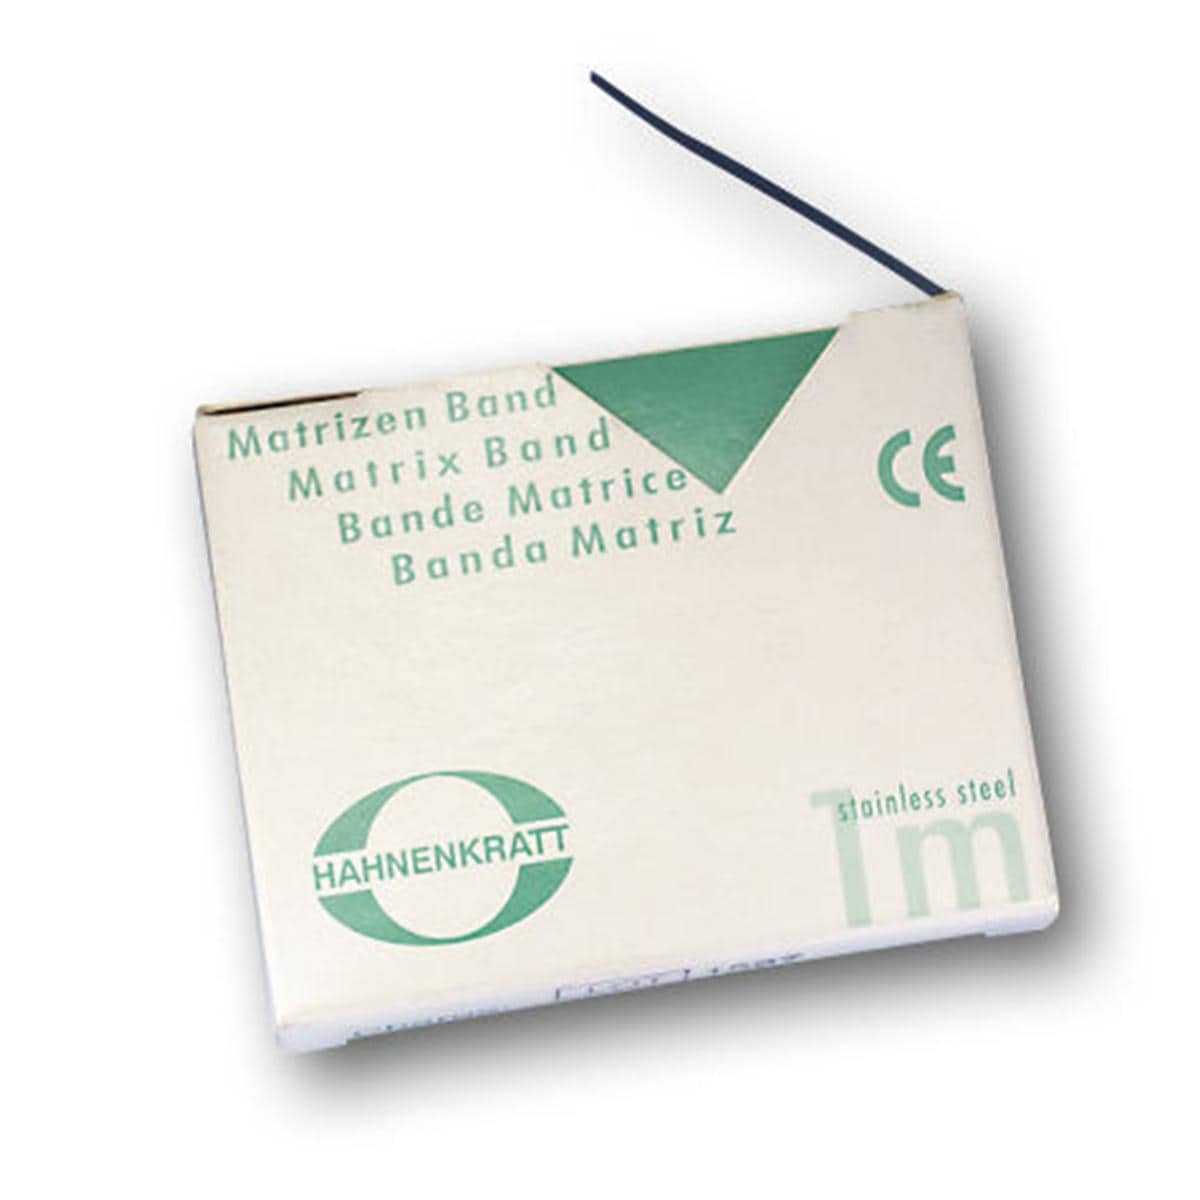 Matrizenband Hahnenkratt - Rolle 10 m - Breite 7 mm, Stärke 0,05 mm